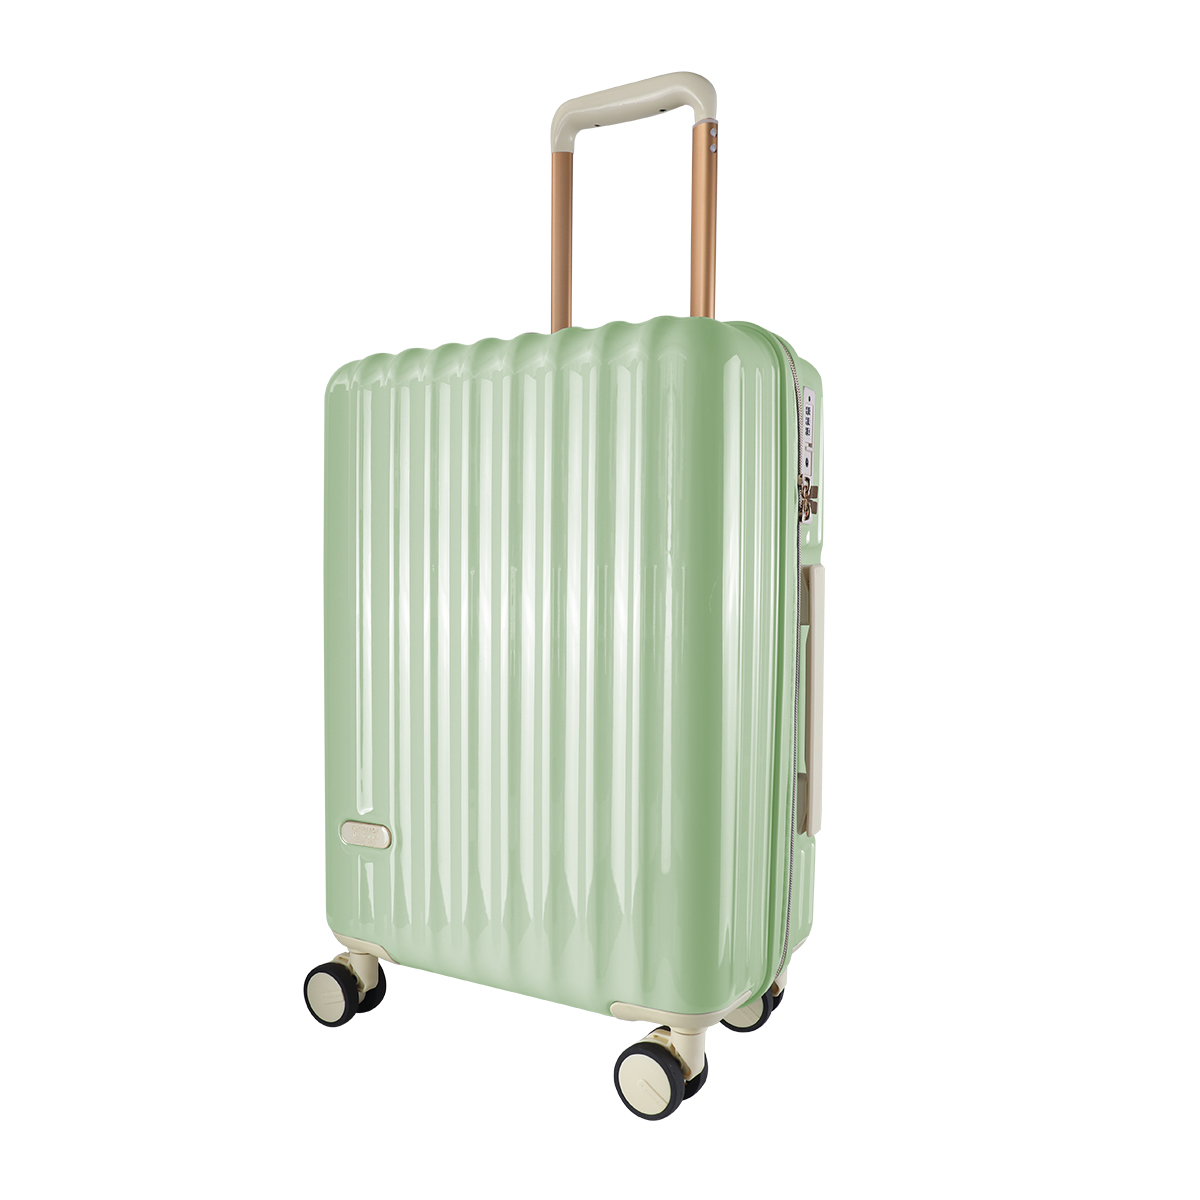 スーツケース 軽量 Sサイズ 39L 1〜2泊 機内持ち込みサイズ TSAロック付き おしゃれ かわ...